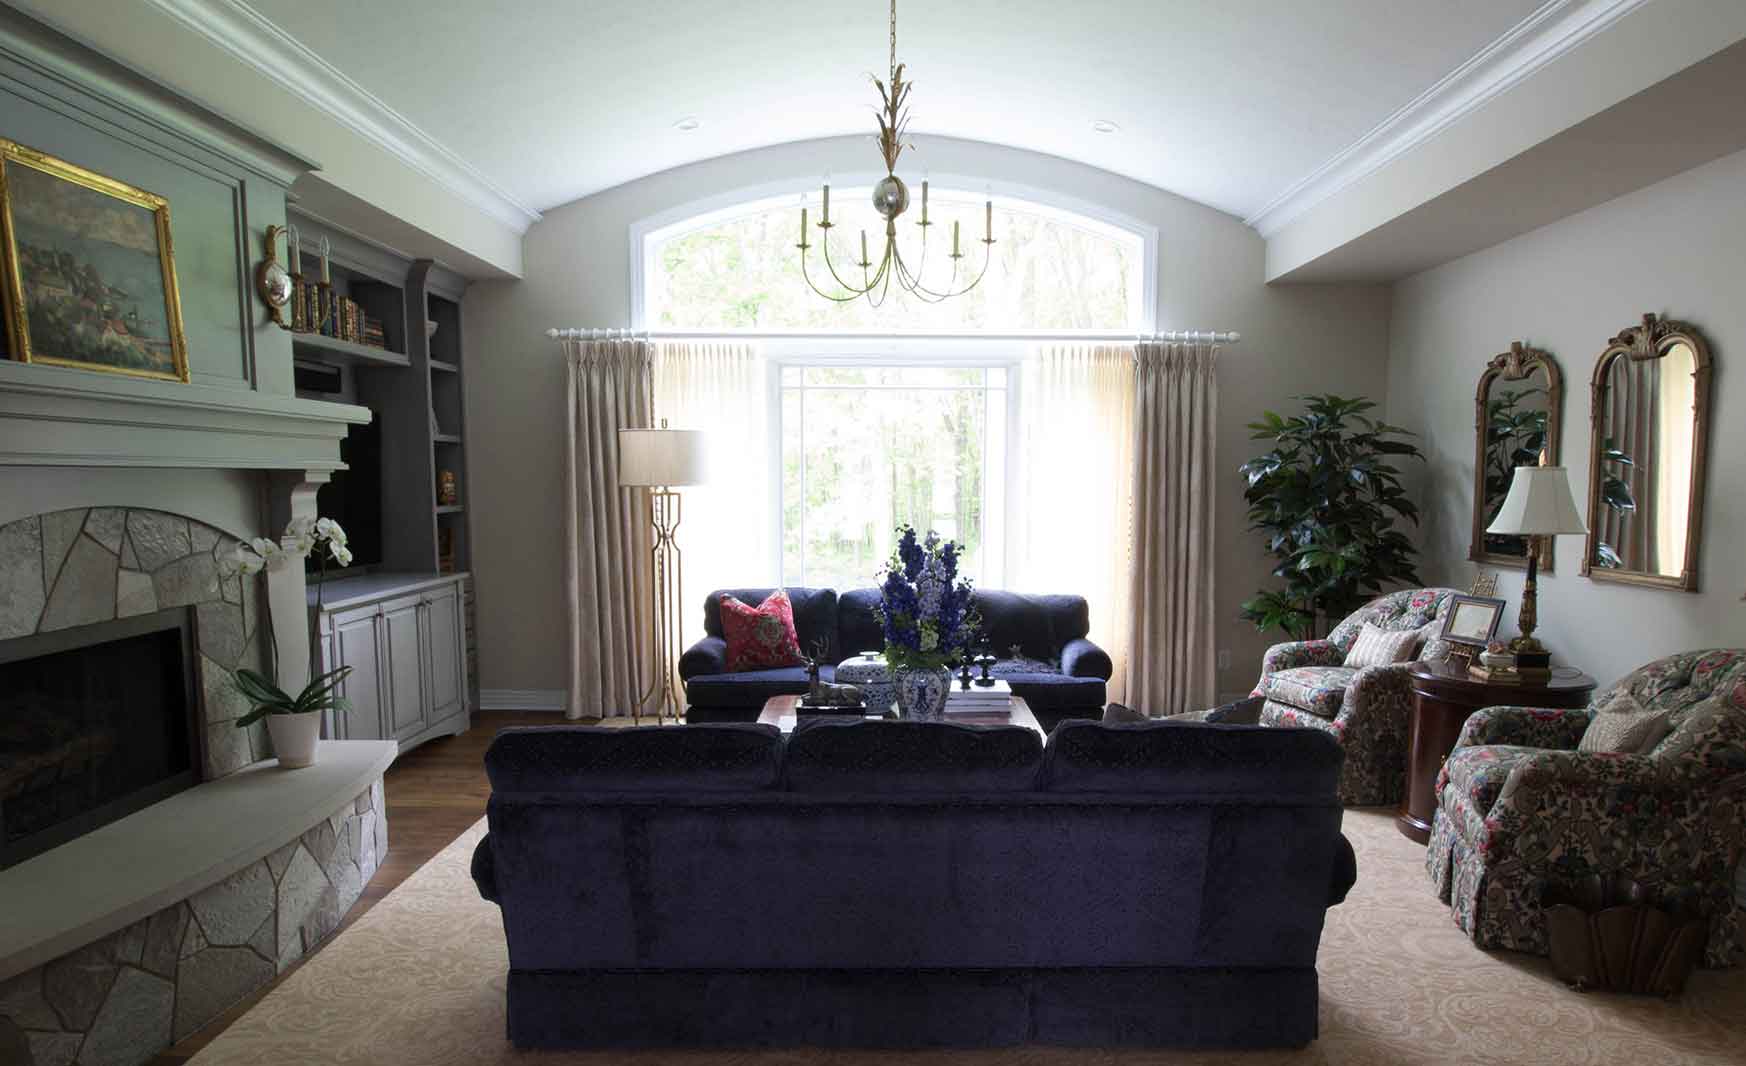 A Family Home - DMC Design Custom Interiors